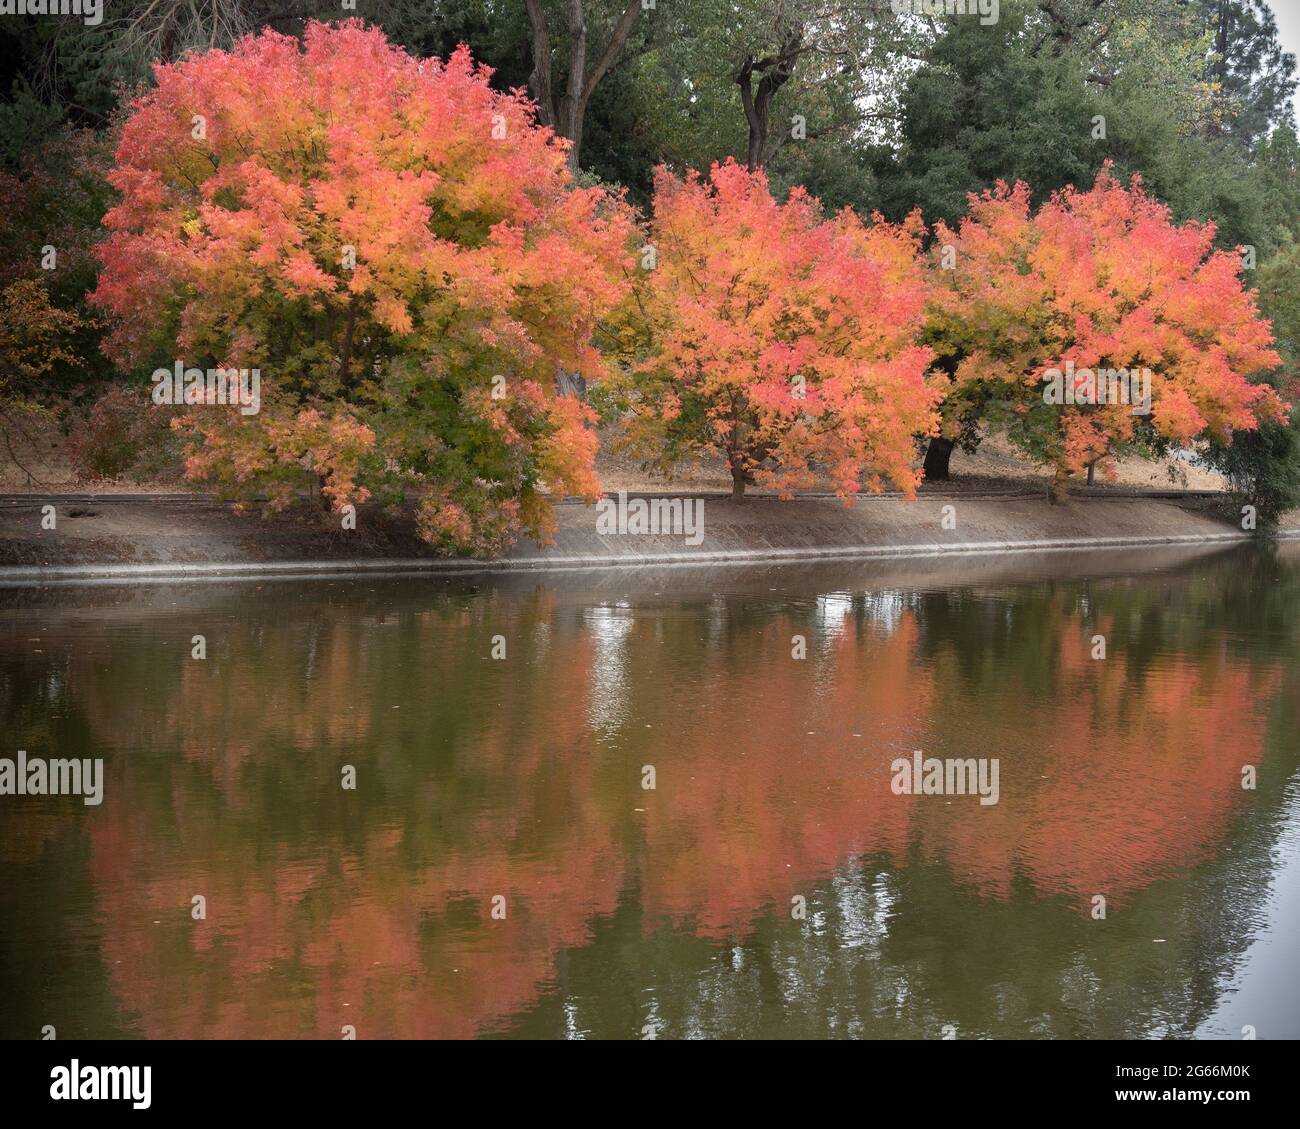 Les arbres colorés de l'arboretum UC Davis à l'automne se reflètent sur le lac Spafford, mais le chemin piétonnier Banque D'Images